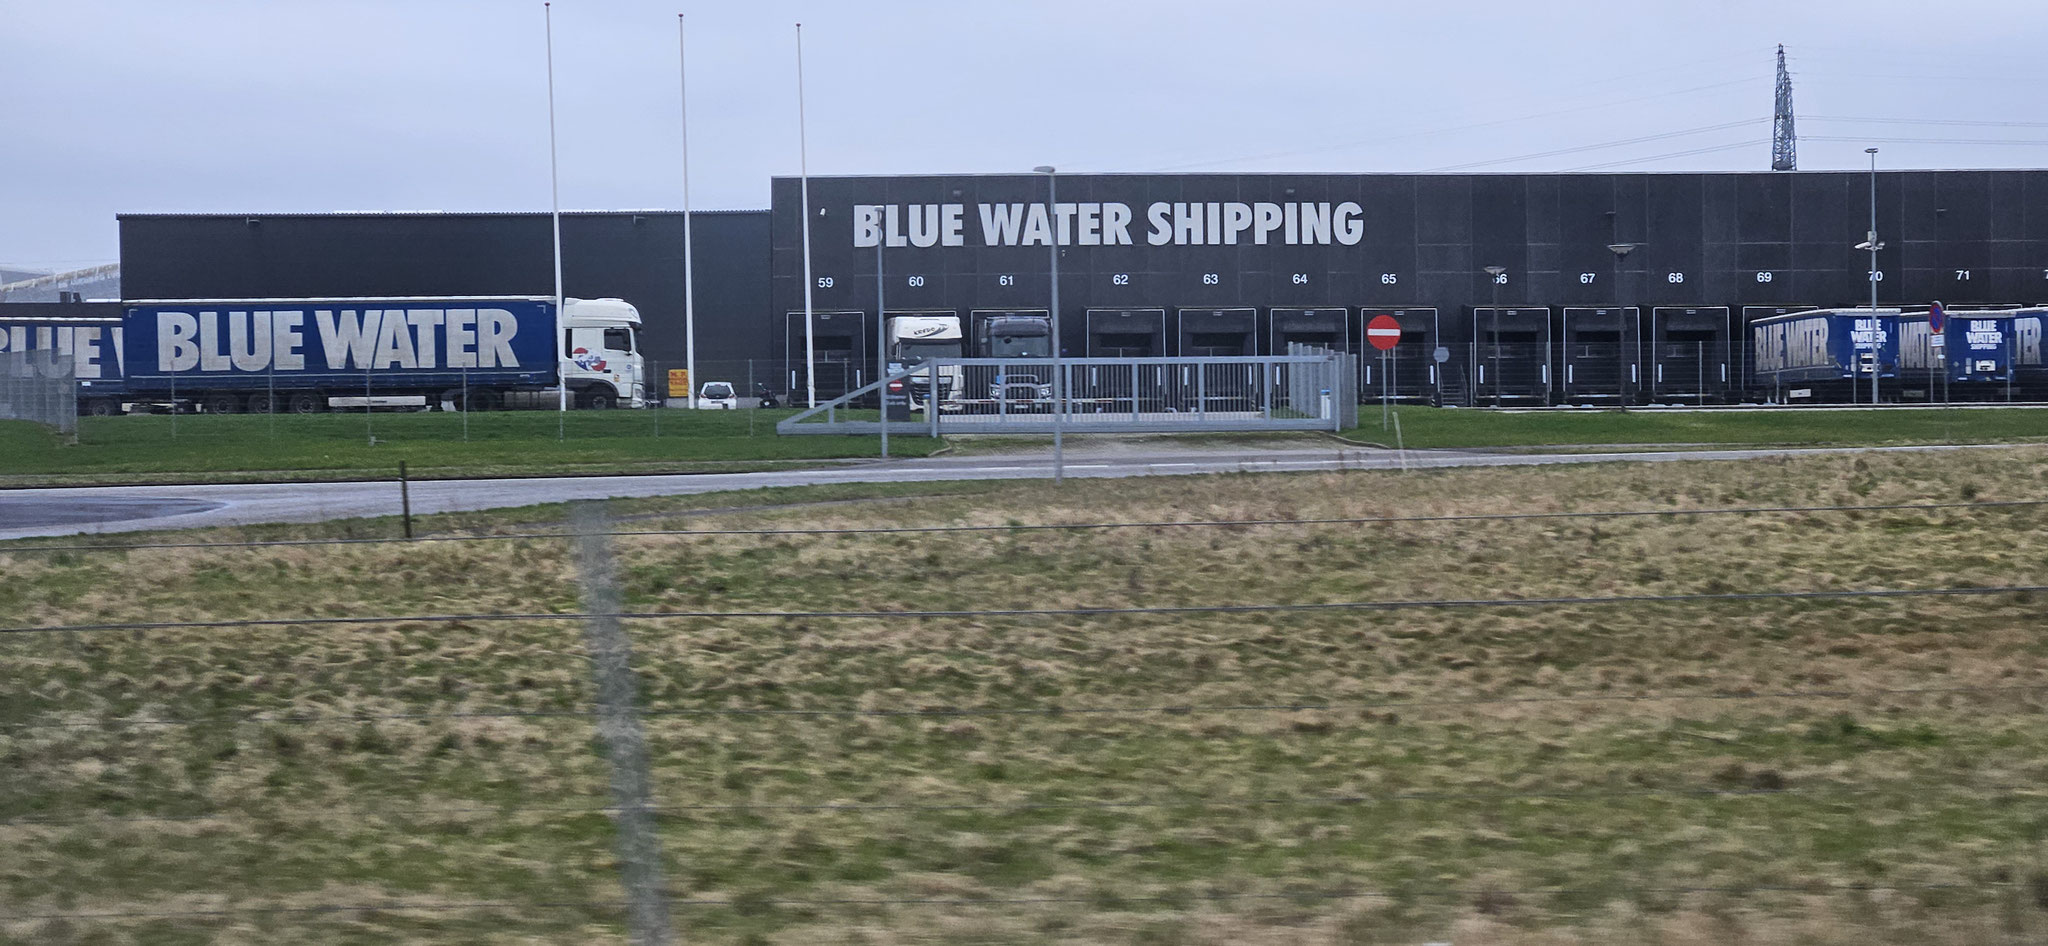 Biltema, Nordpost und Blue Water Shipping ... wir sind in Skandinavien